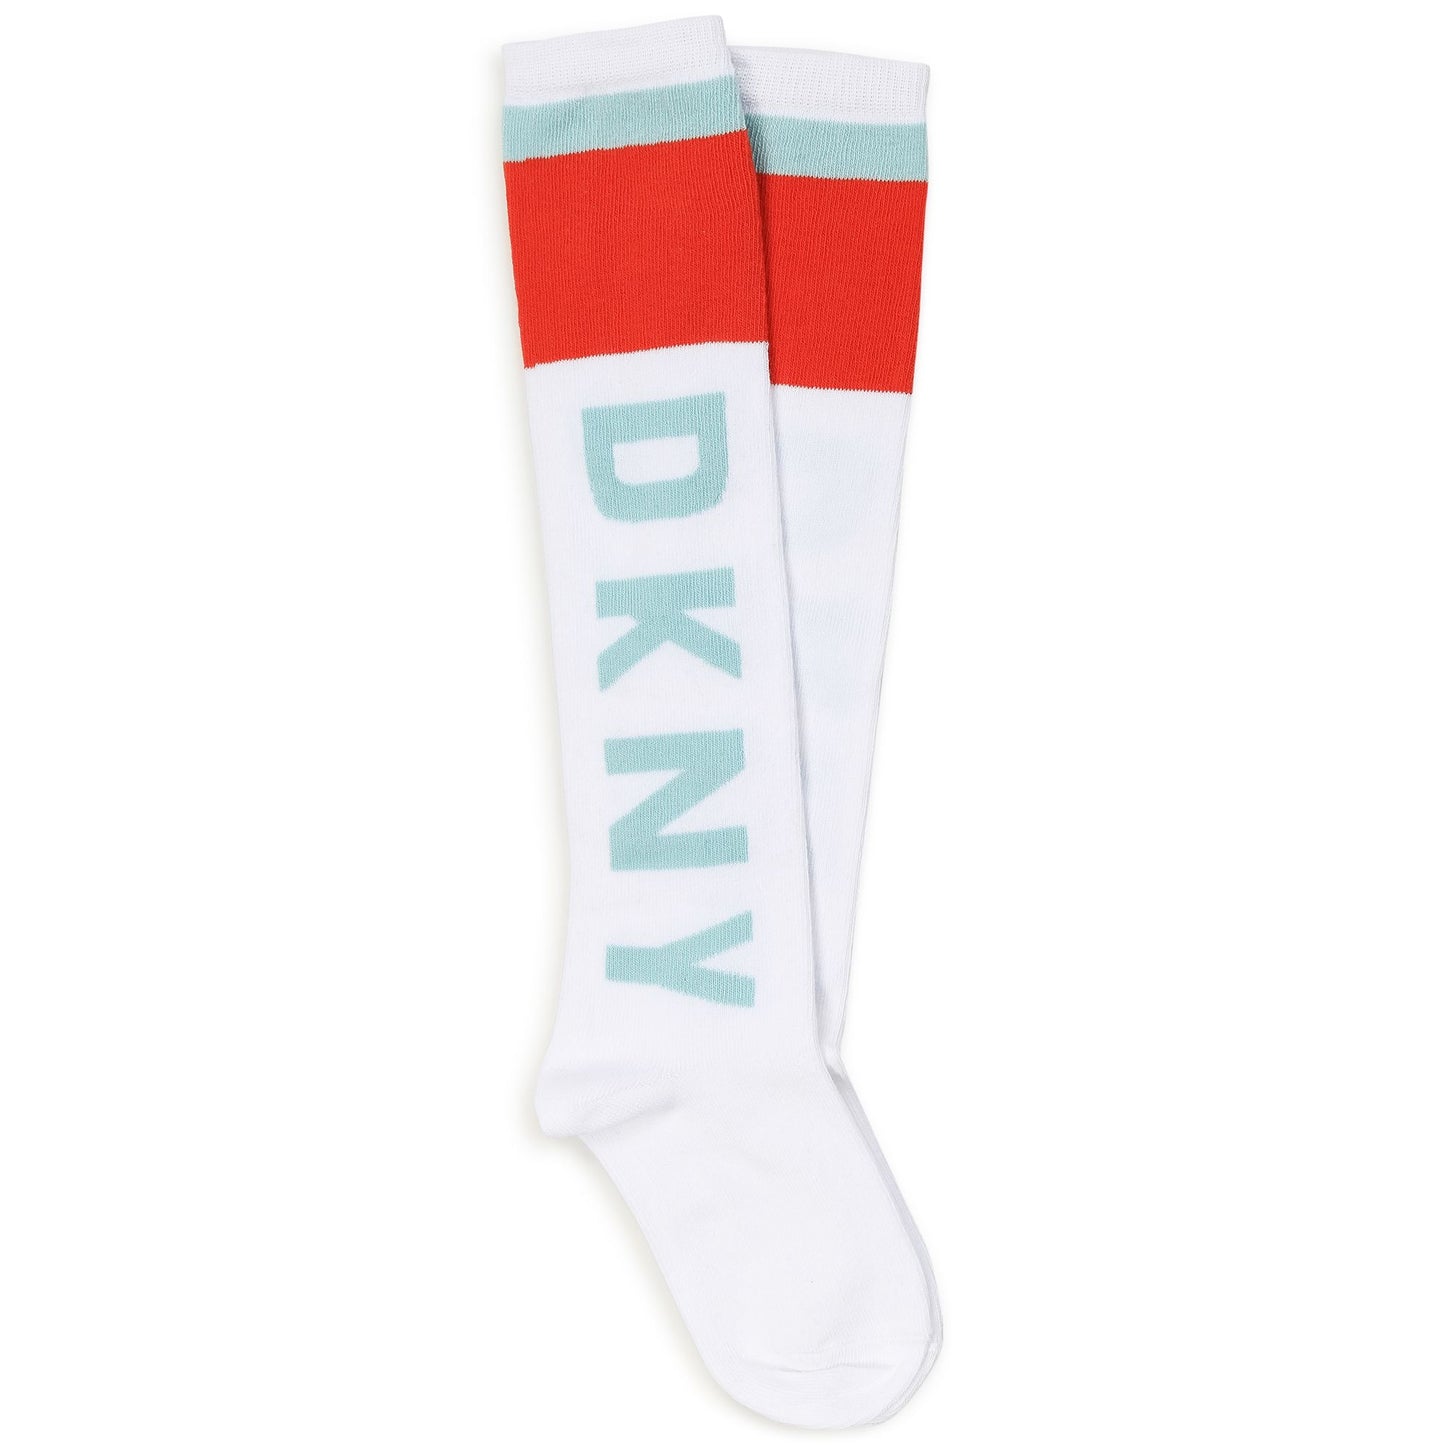 DKNY Girls White & Orange Knee High Socks